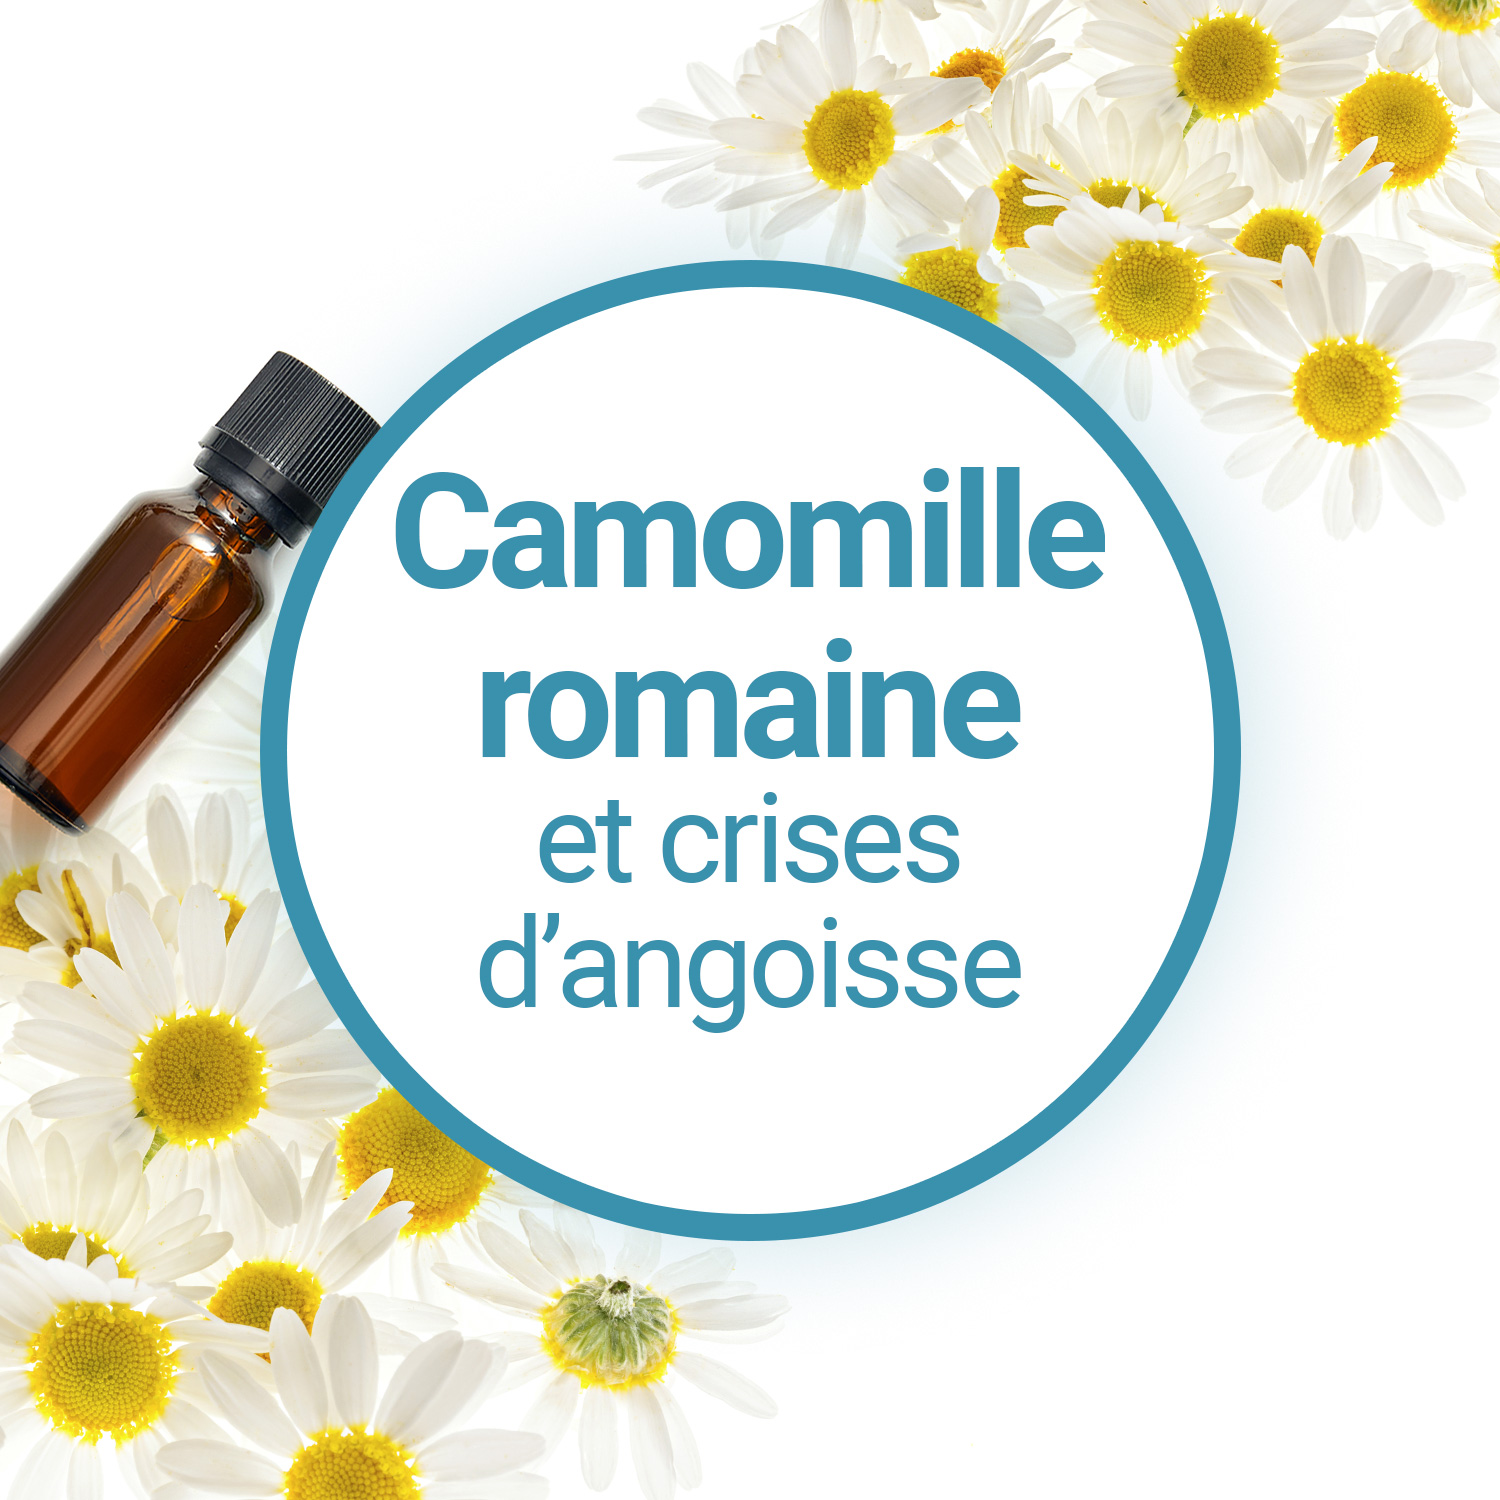 Fiche sur l'huile essentielle de Camomille Romaine - Bienfaits